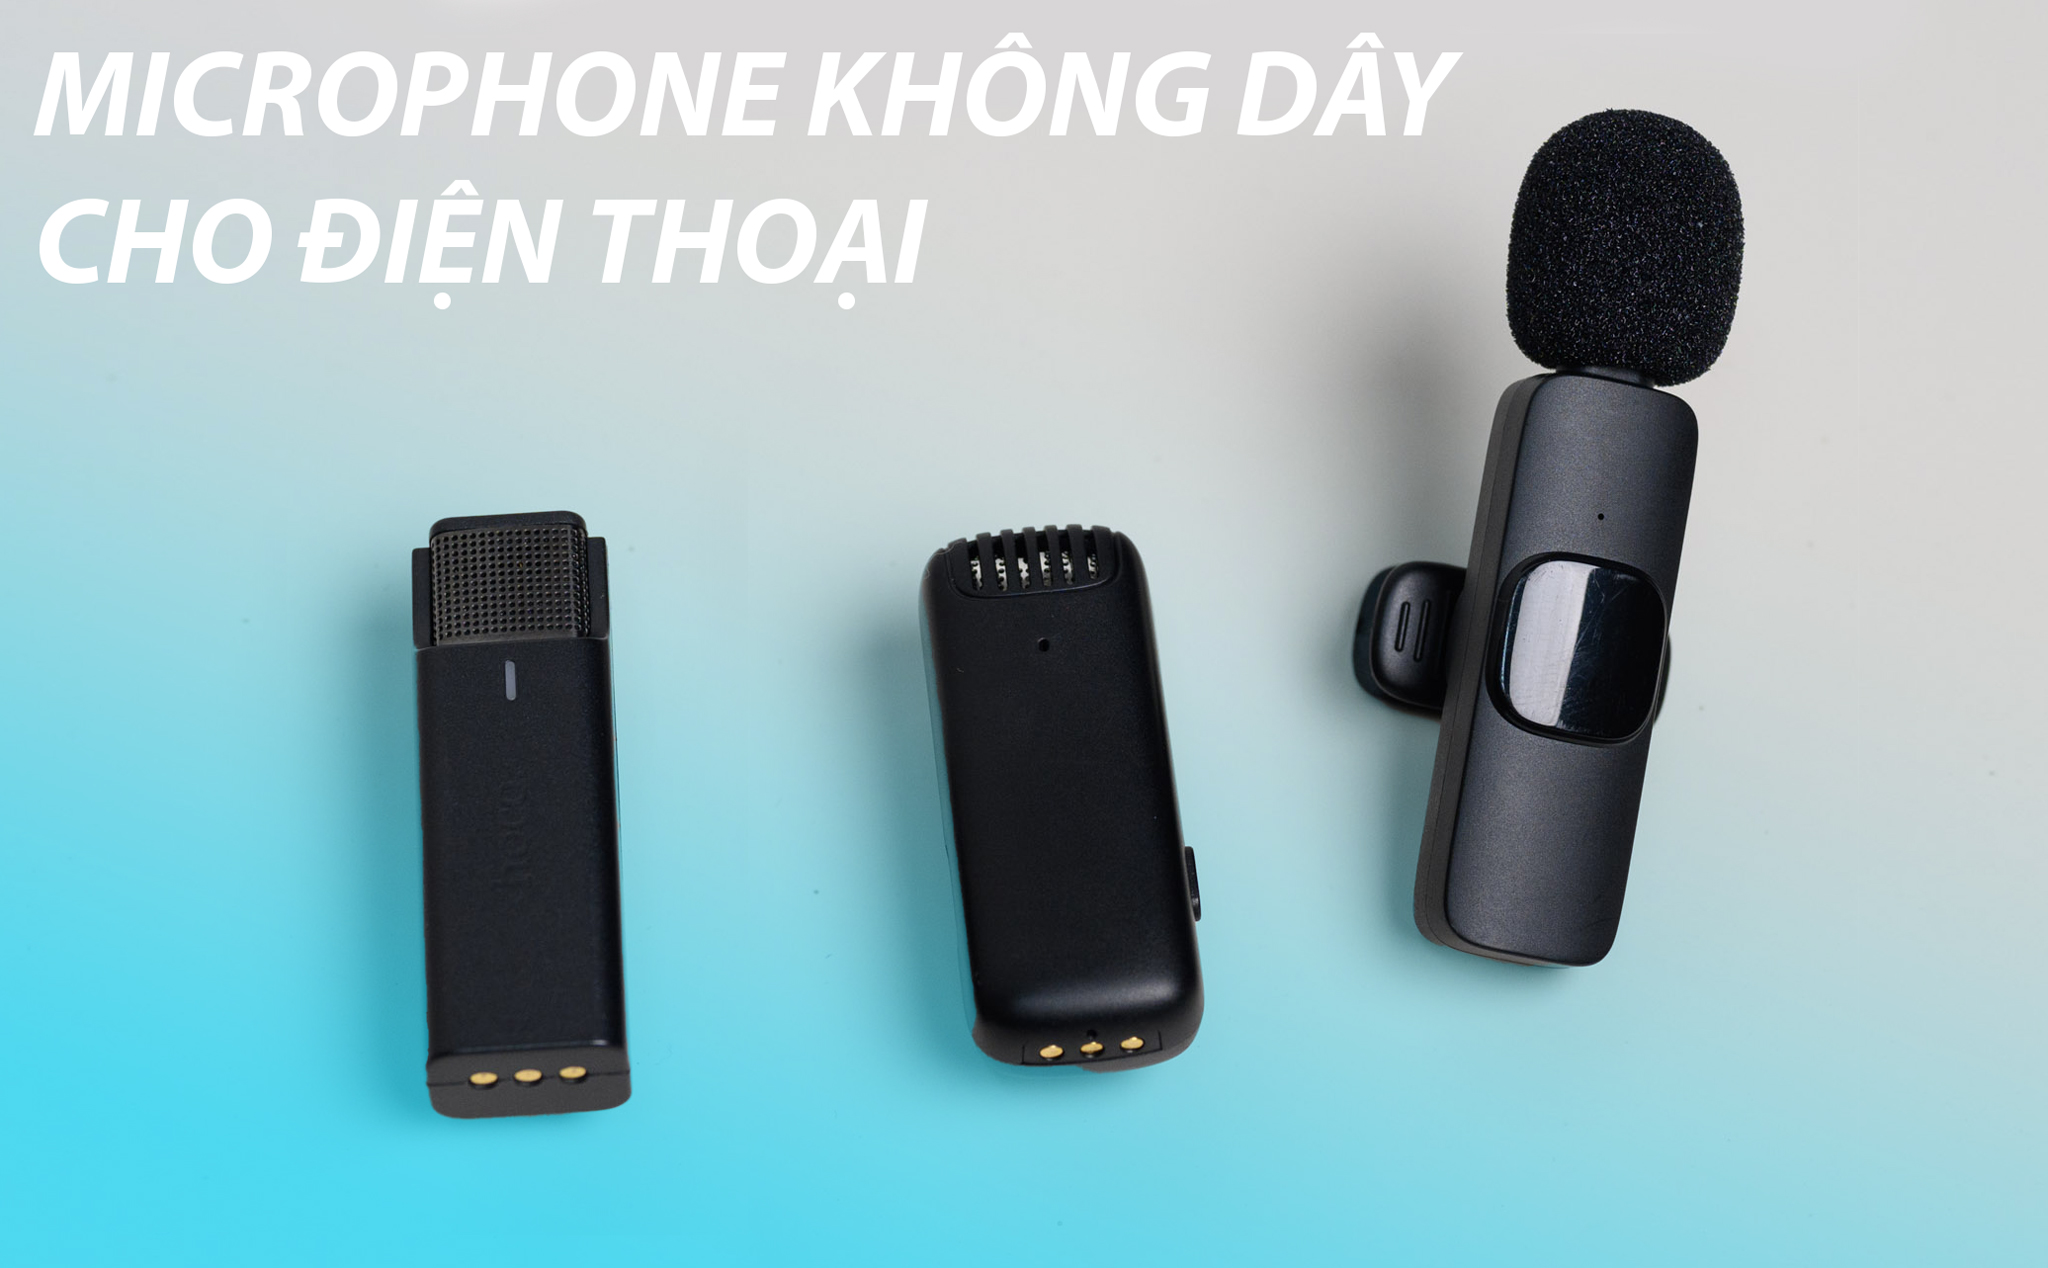 Trên tay 3 loại microphone không dây dành cho điện thoại: gọn, kết nối nhanh, thời lượng pin ngắn